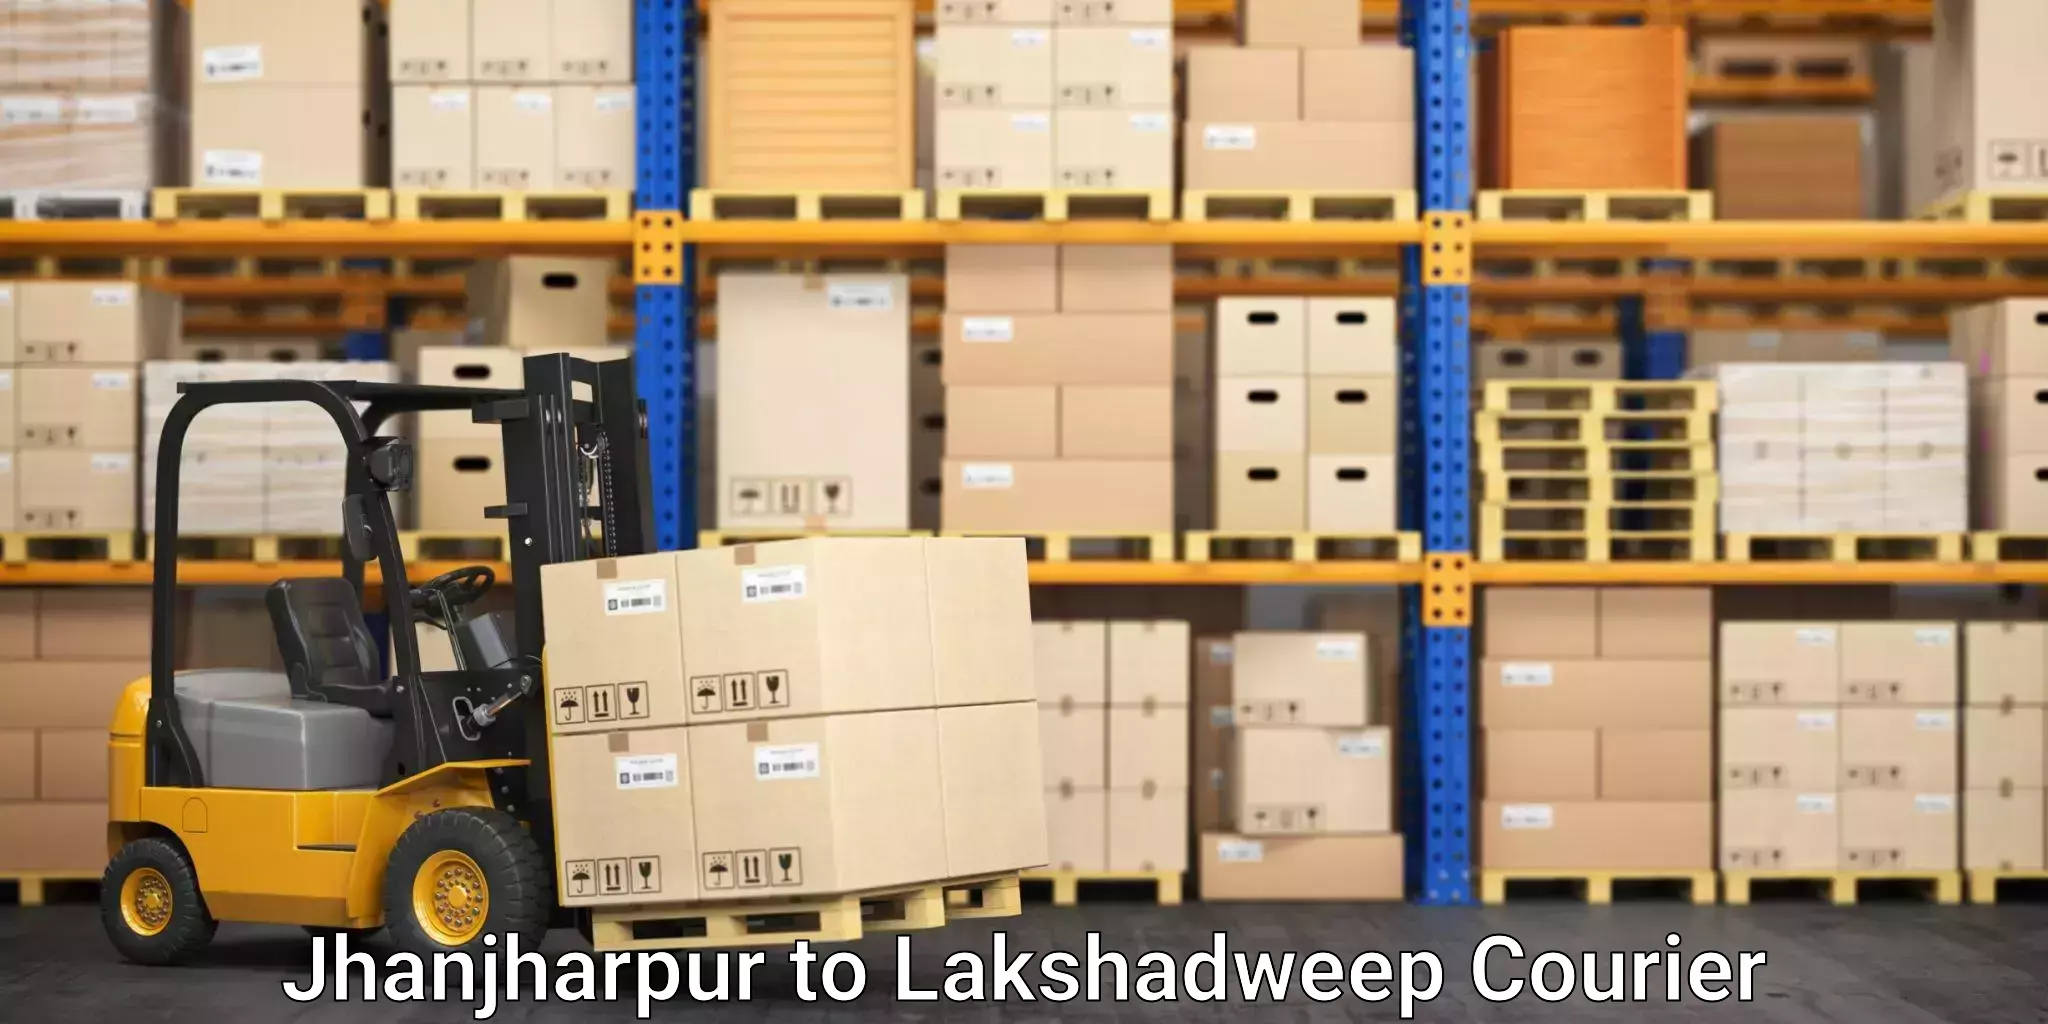 Stress-free furniture moving Jhanjharpur to Lakshadweep